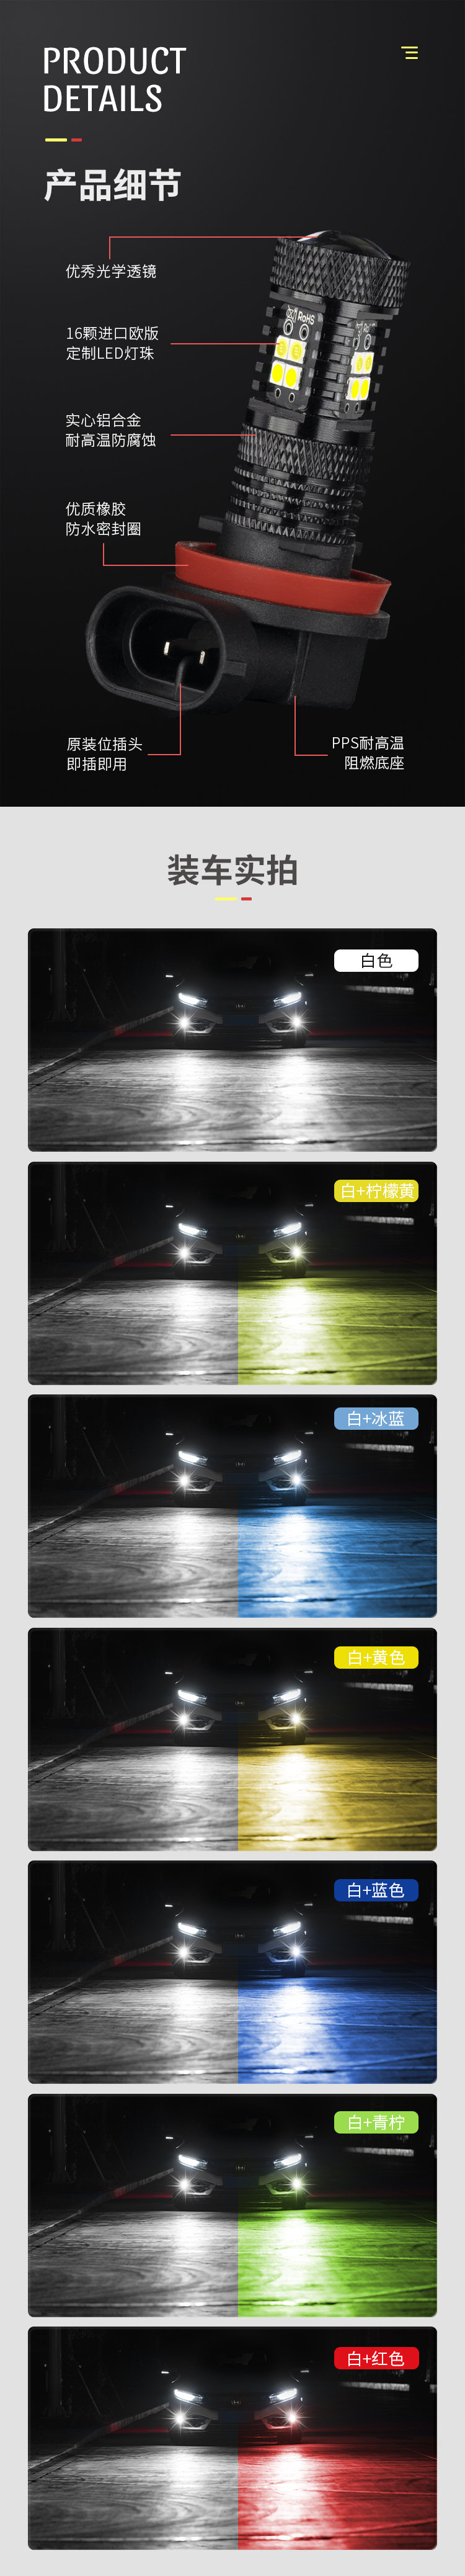 汽車LED霧燈詳情頁設計圖3